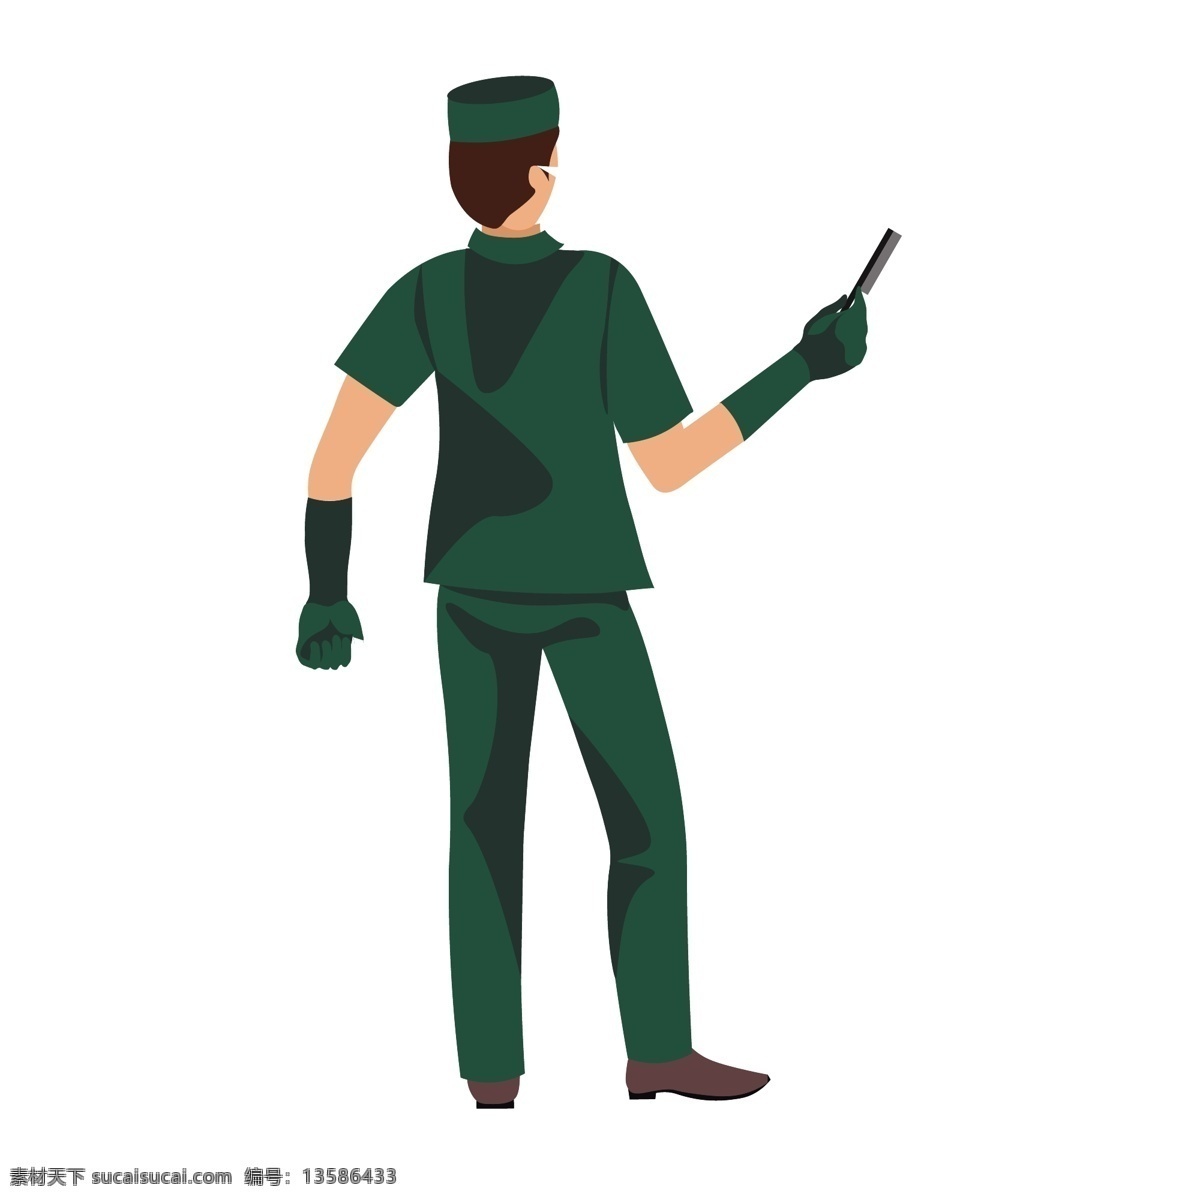 卡通 手术 医生 矢量 卡通医生 医师 卡通医师 绿色 绿色制服 手术室 扁平化 扁平化风格